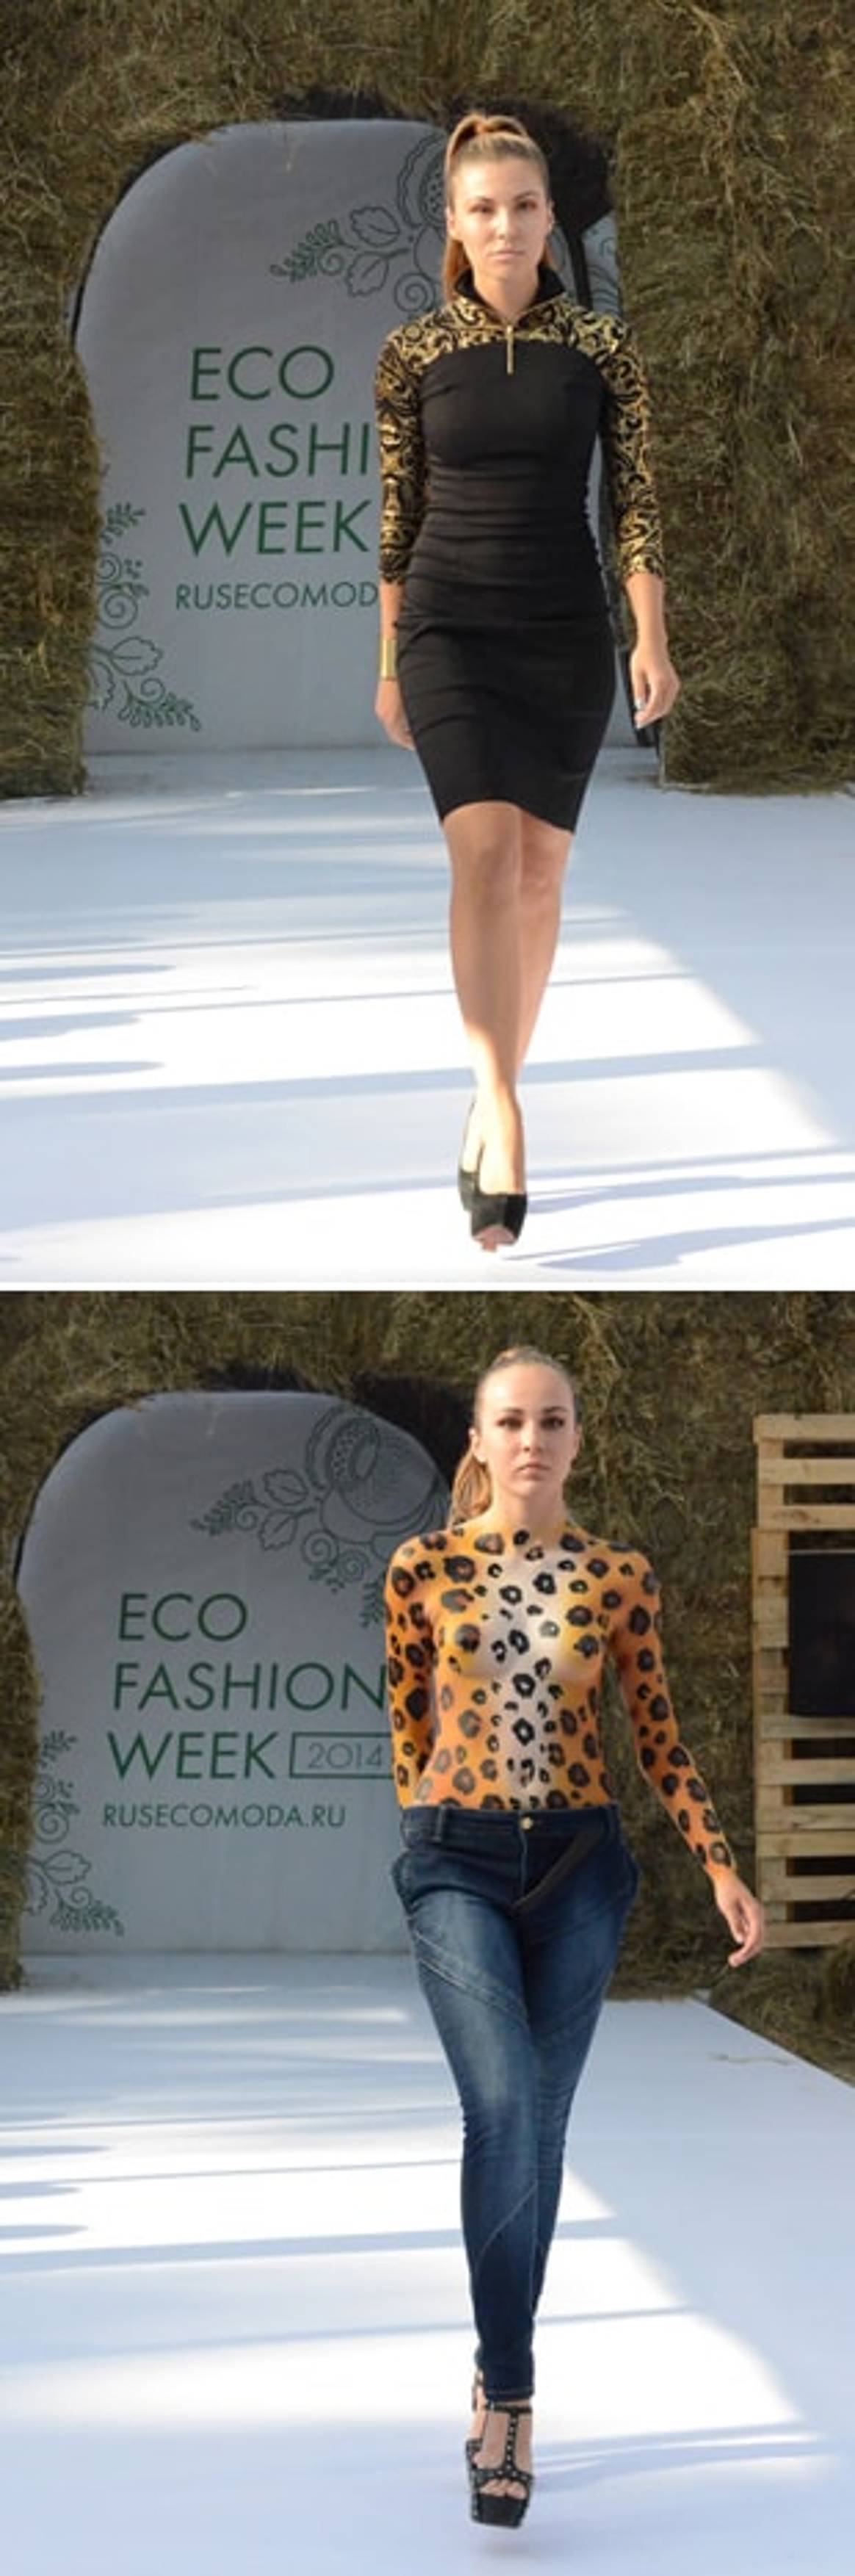 Eco Fashion Week: Люди становятся гуманнее